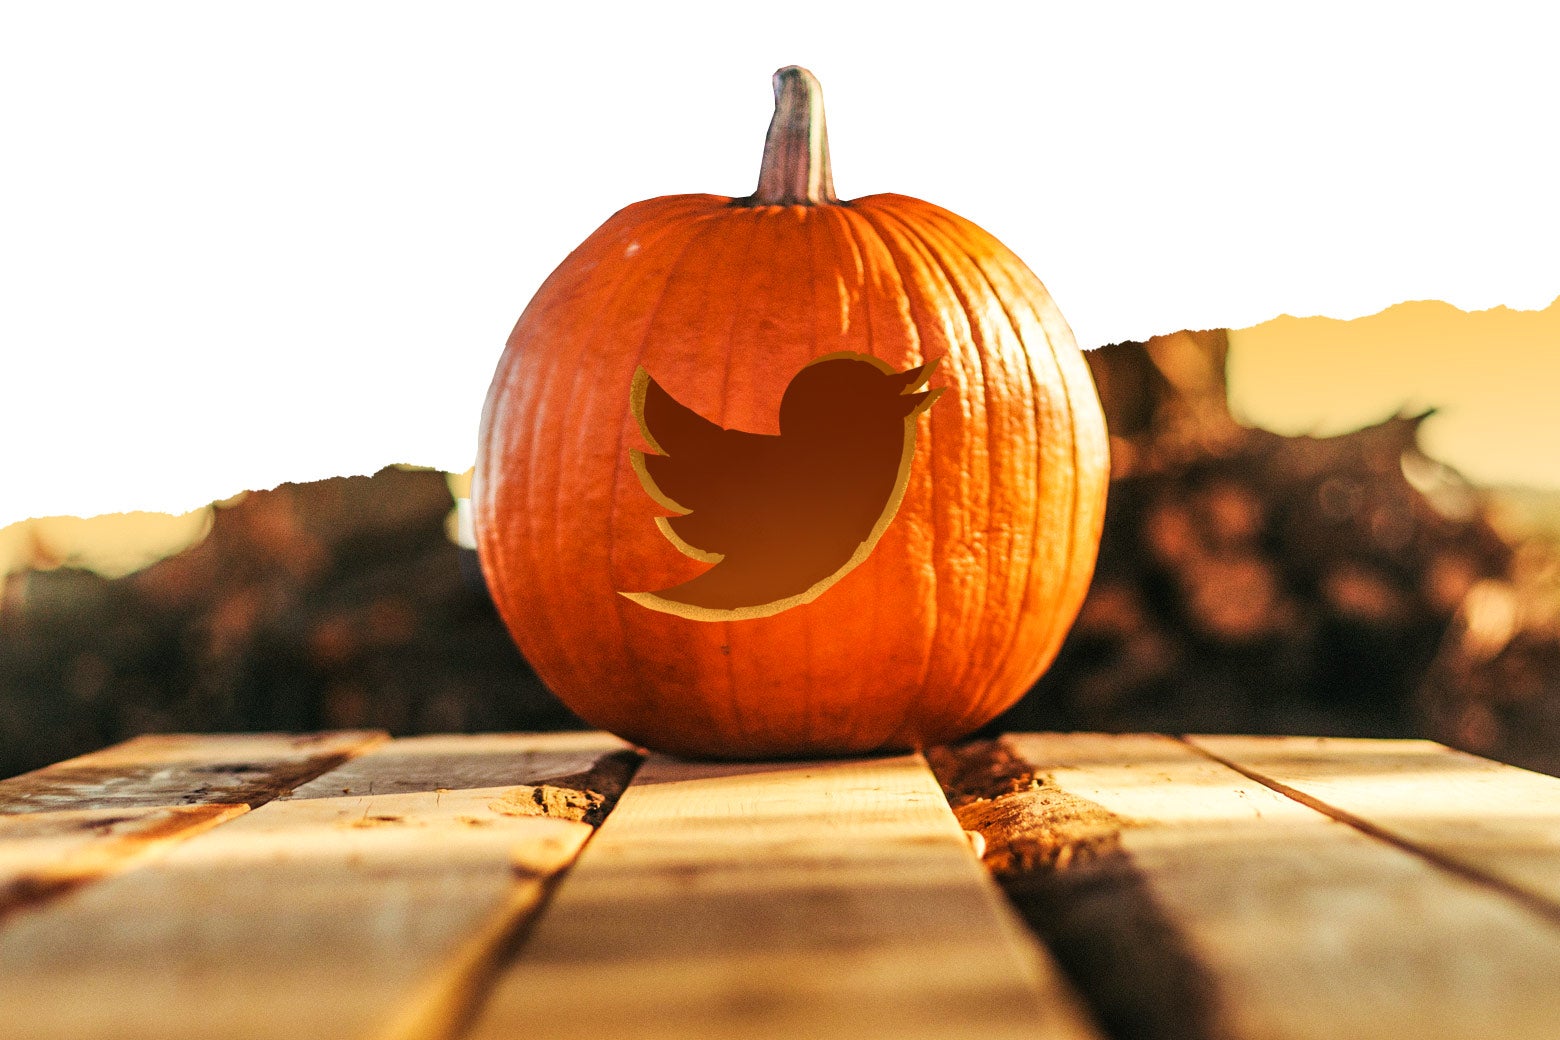 A pumpkin with the Twitter bird logo cut into it.